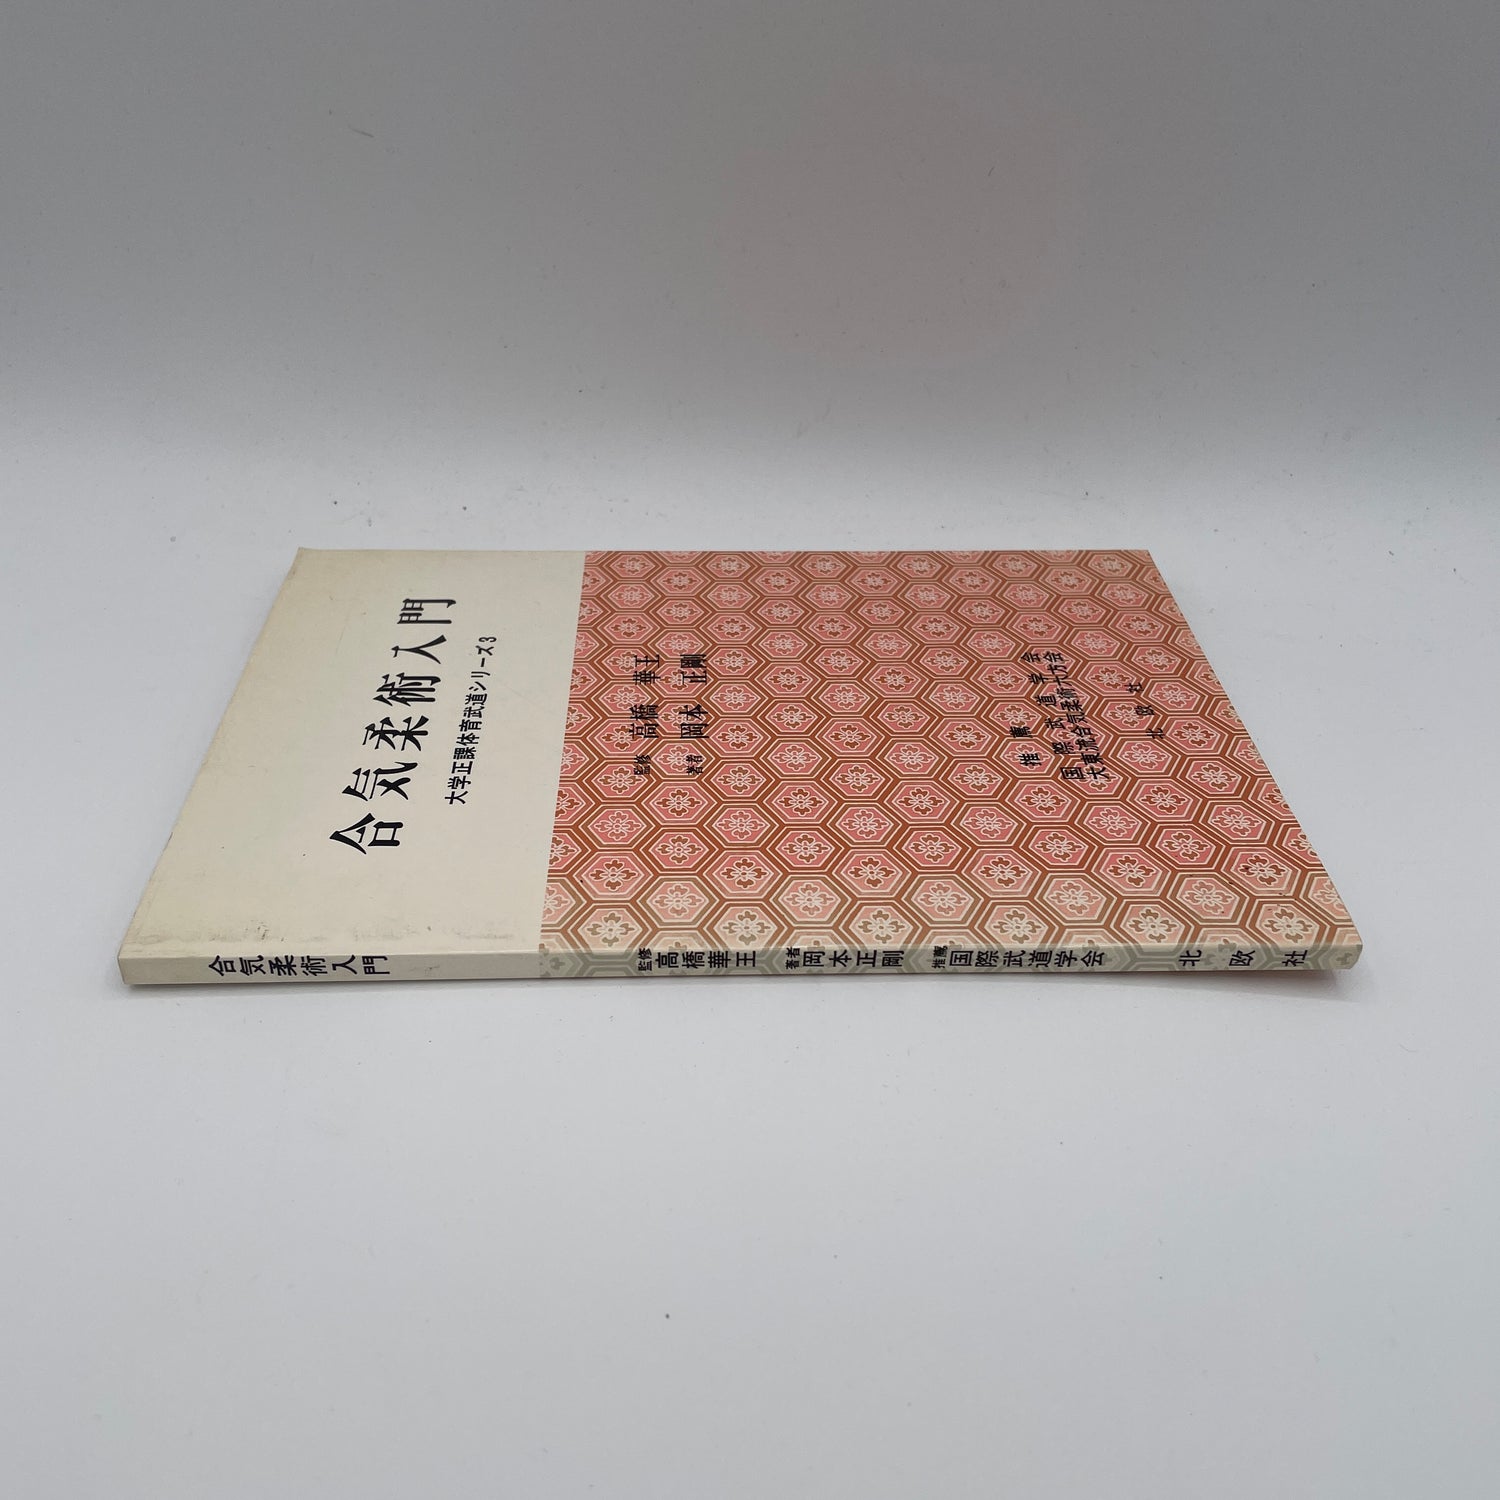 Intro to Aikijujutsu (University PE Martial Arts Series 3) Book by Seigo Okamoto (Preowned)